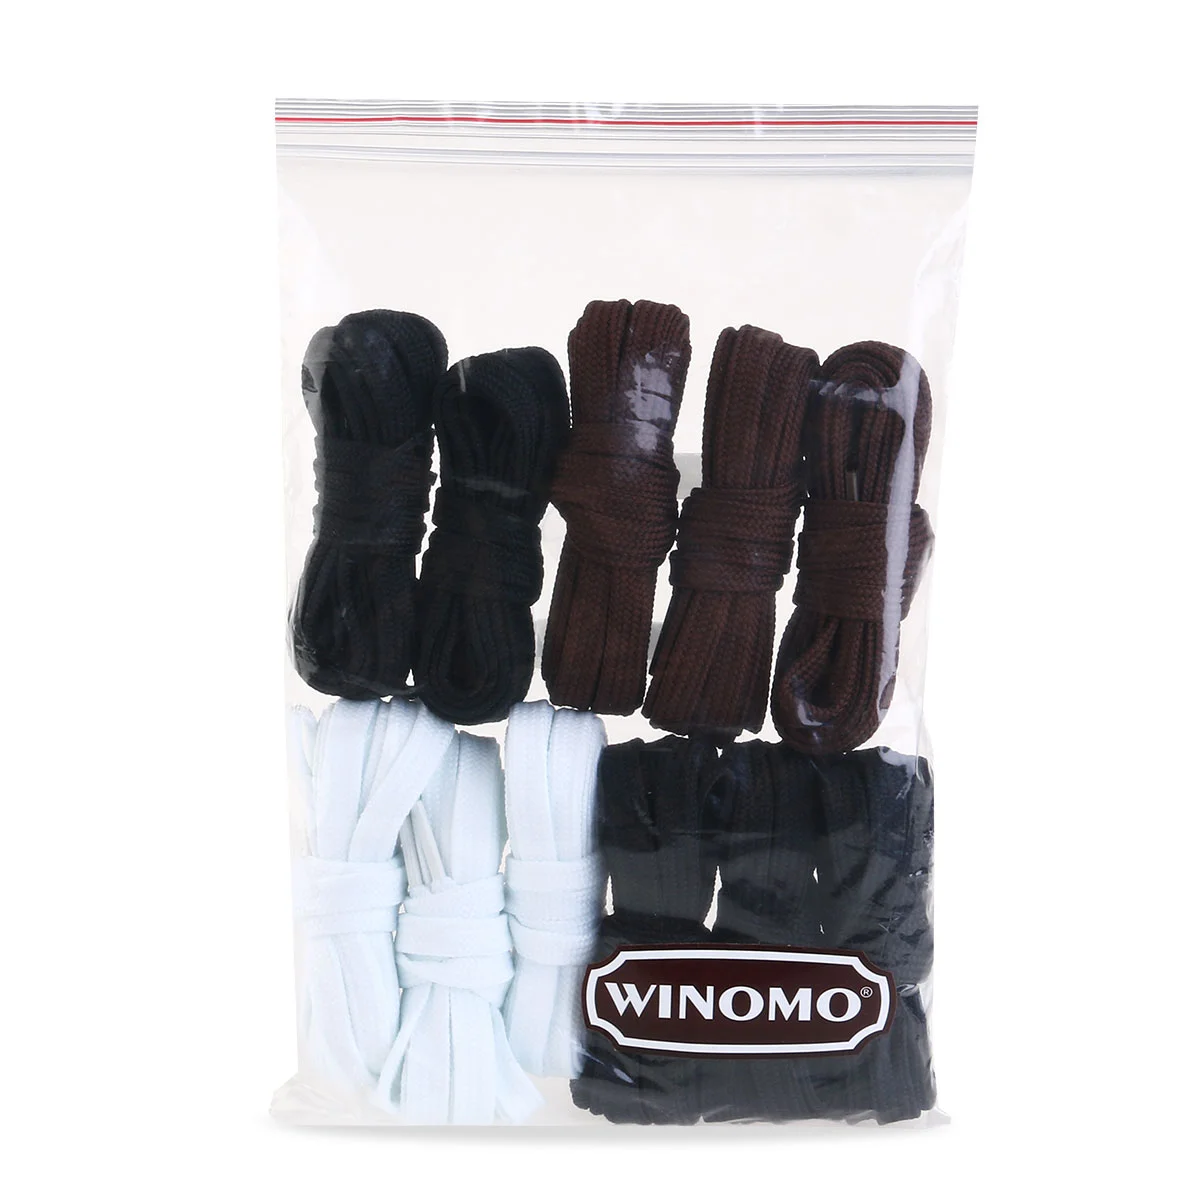 WINOMO 11 пар плоских шнурков, шнурки для спортивной обуви, ботинок, кроссовок, коньков